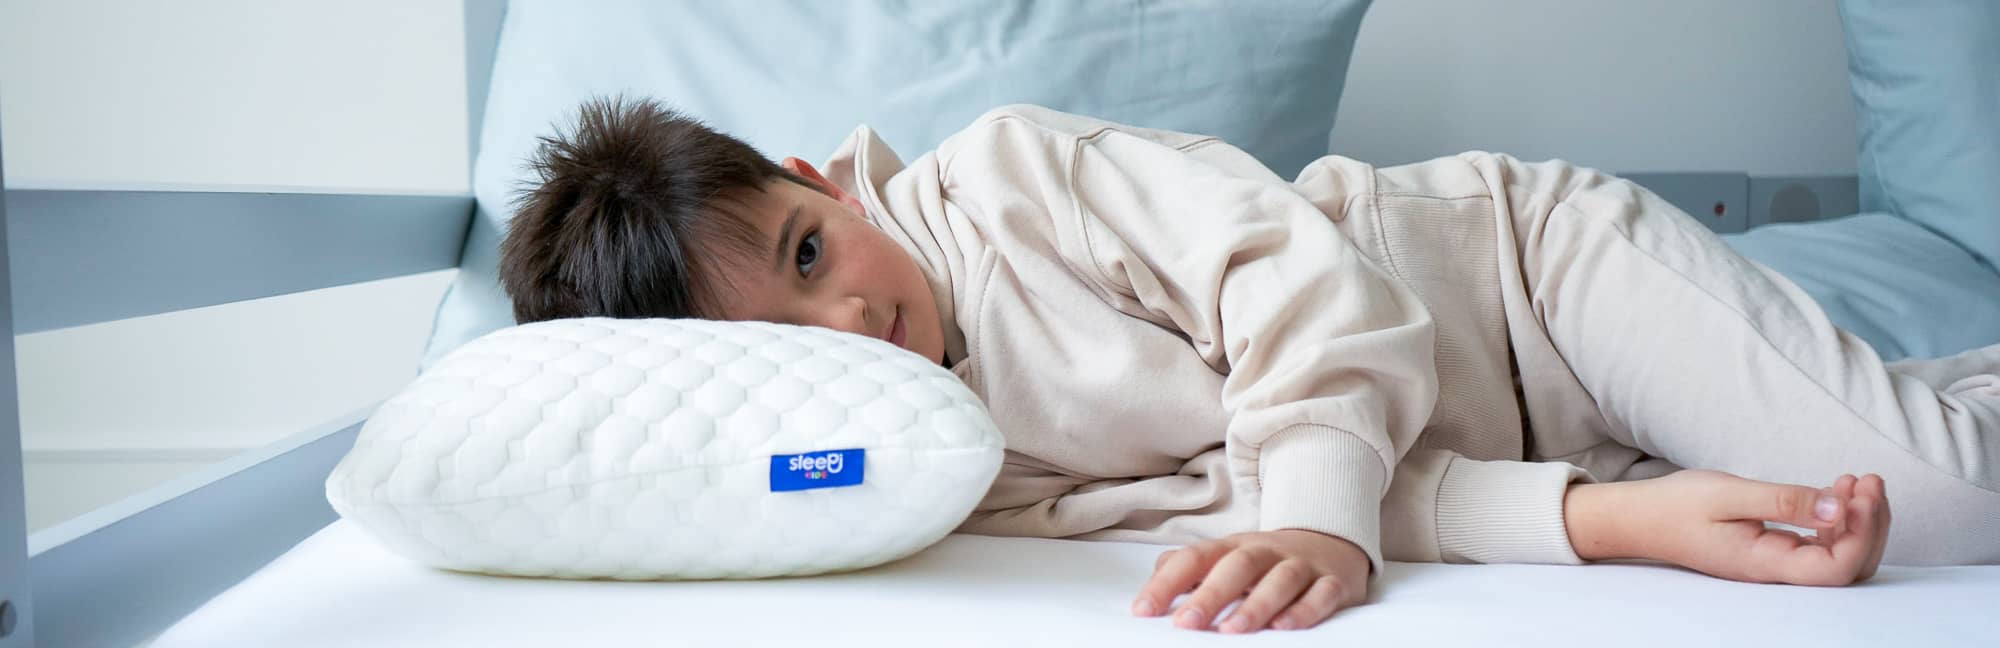 Gesundes Schlafen für Kinder - Sleepi Nackenstützkissen für optimale Nackenunterstützung